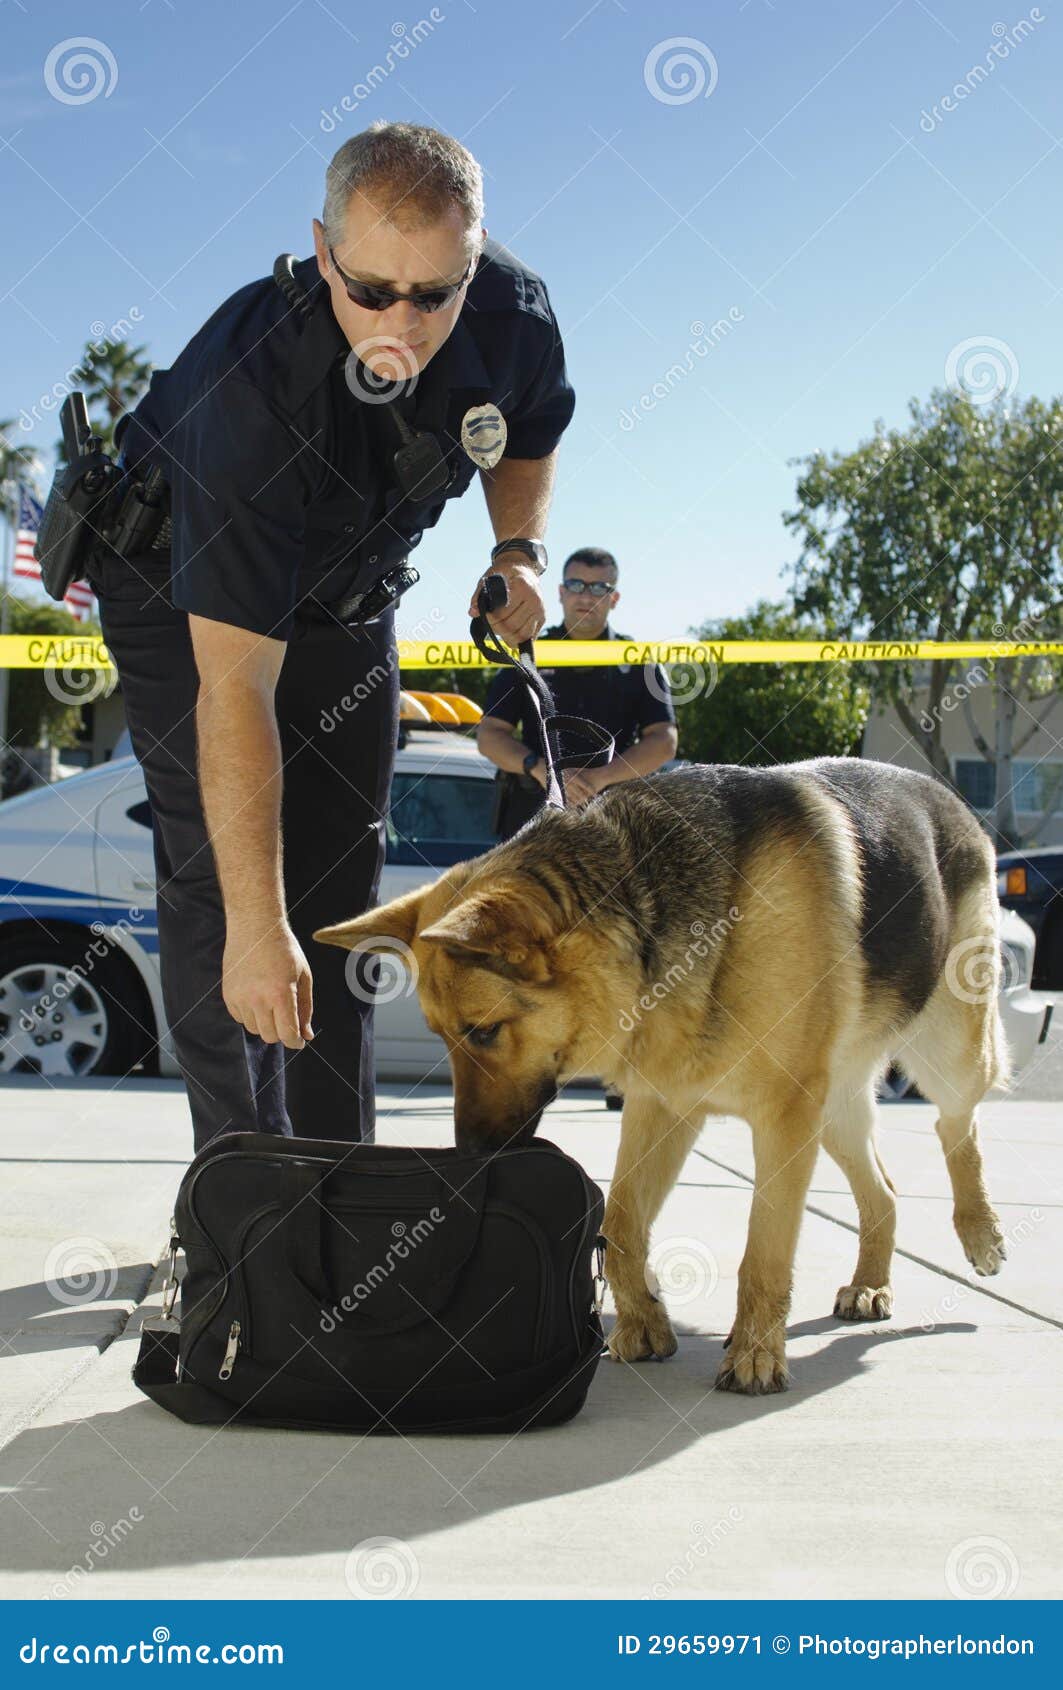 police dog sniffing bag